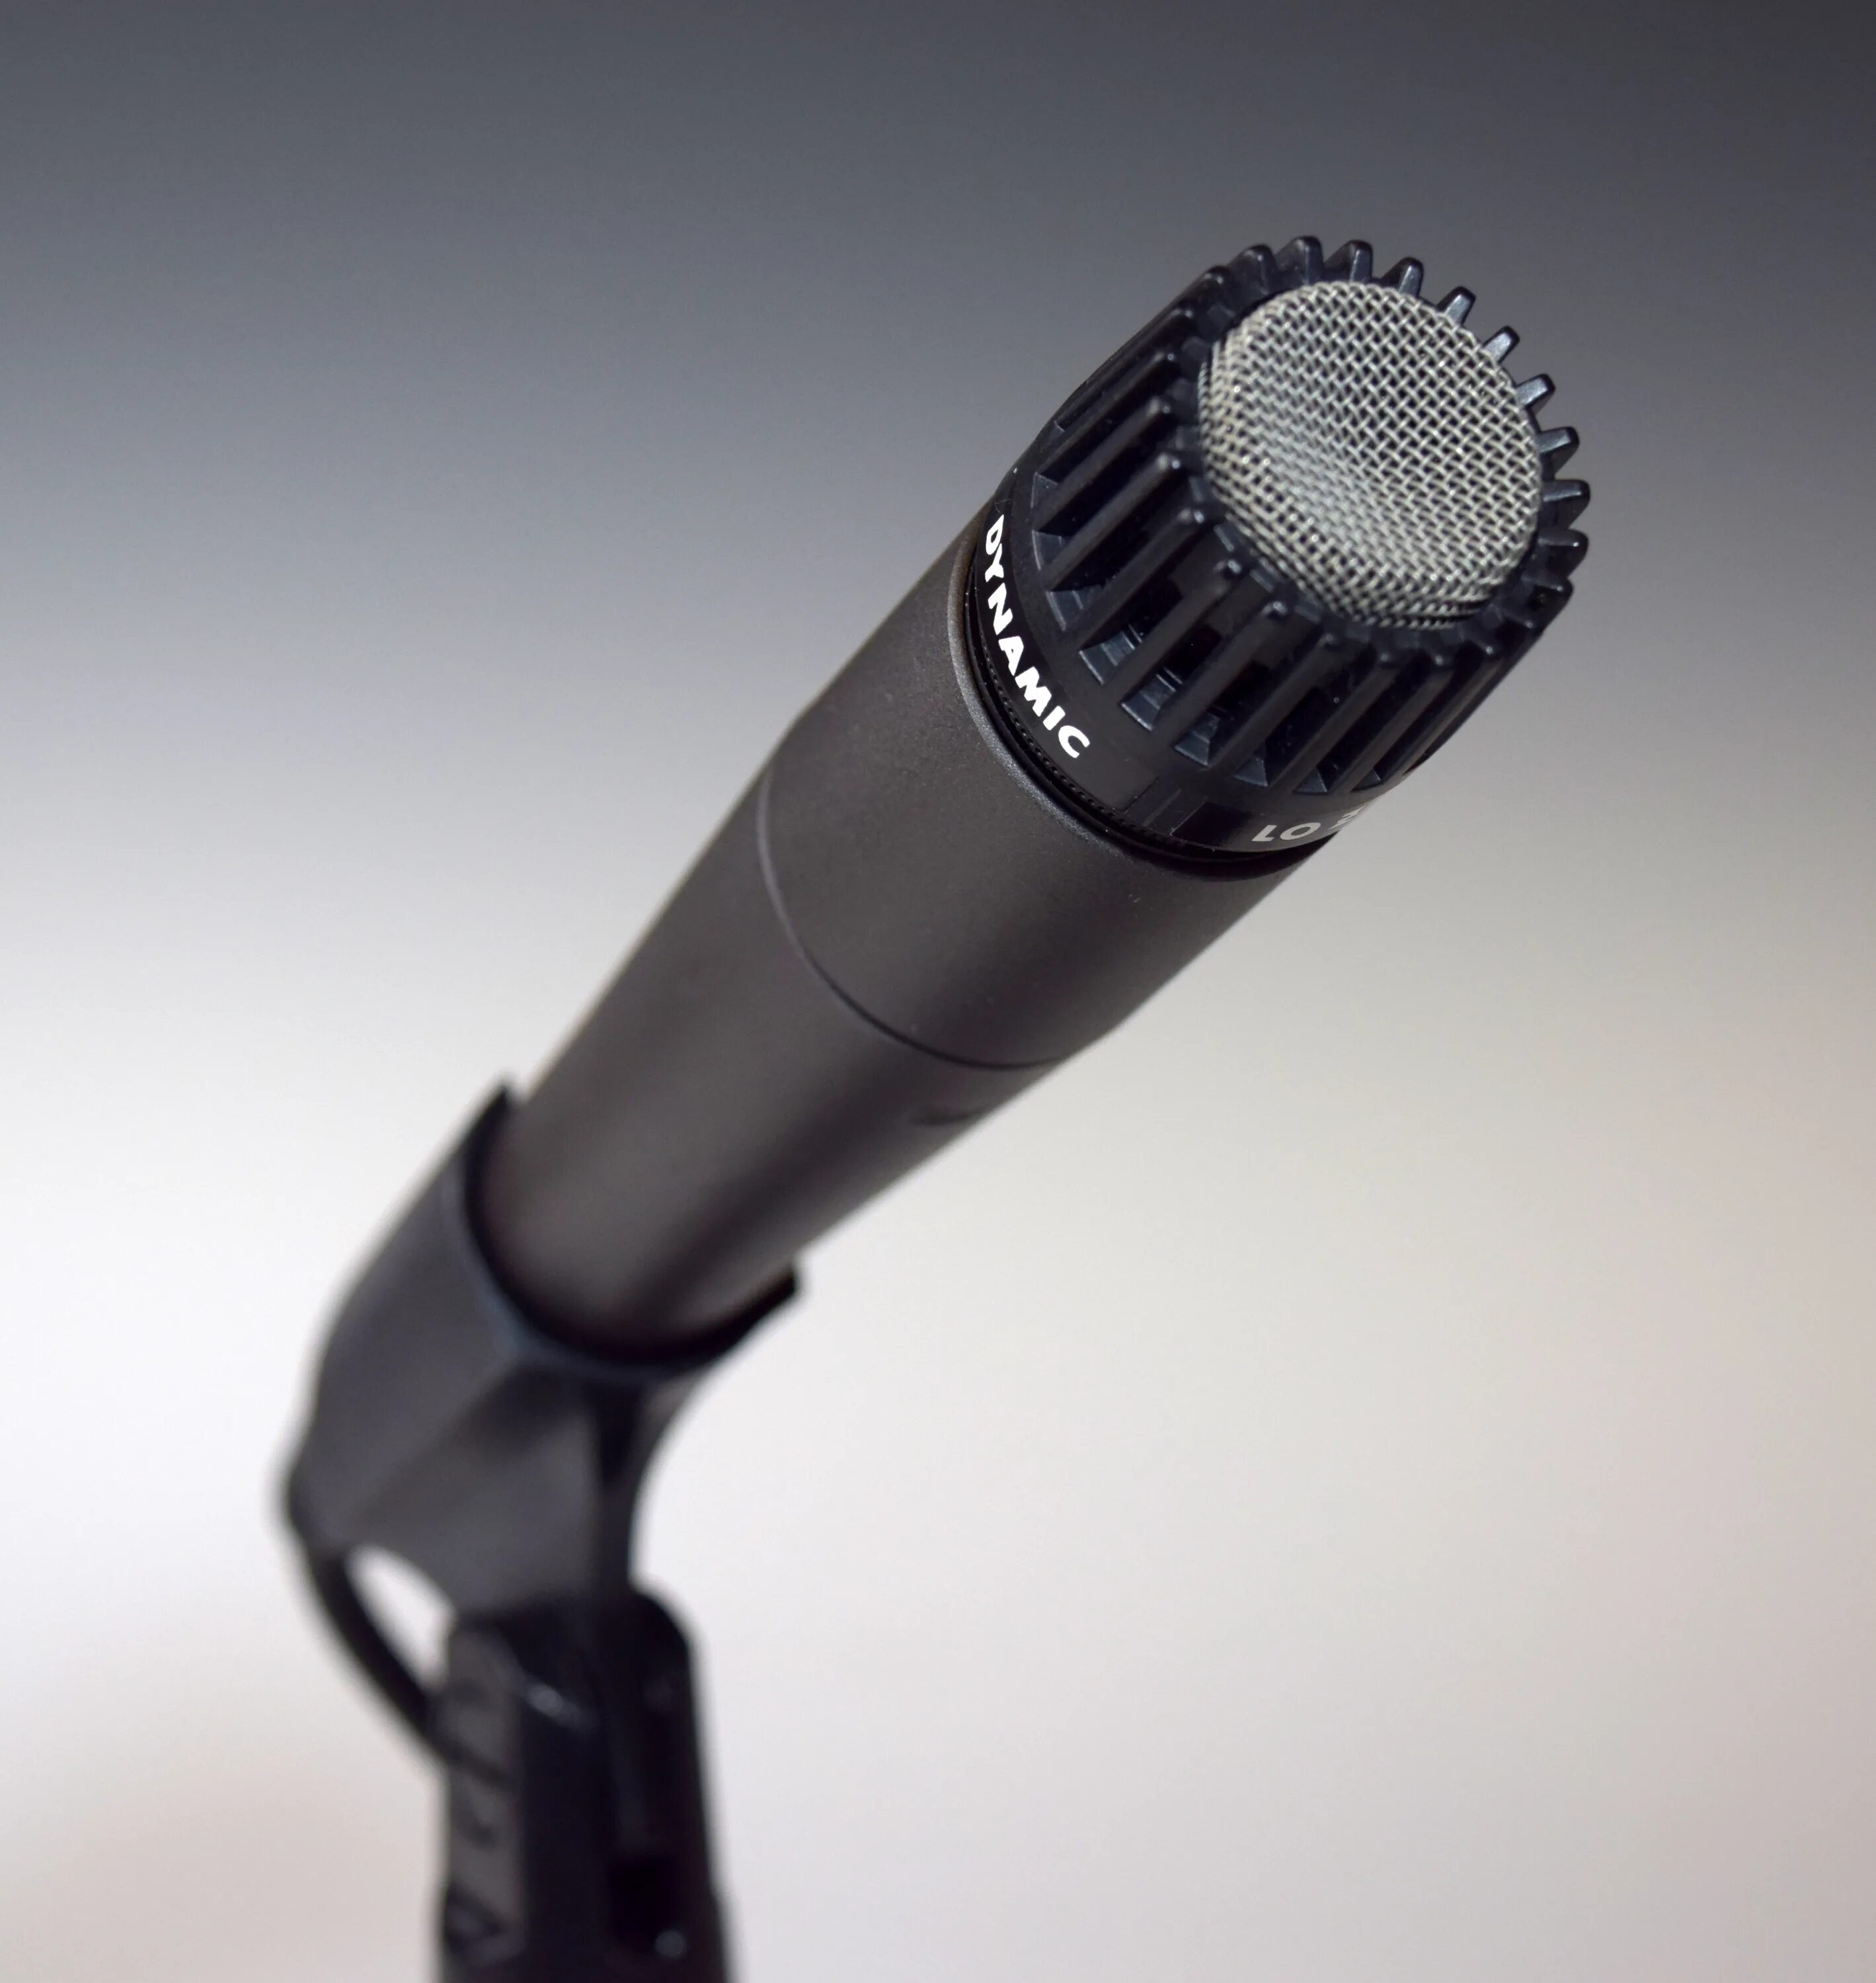 Как использовать микрофон в качестве микрофона. Динамический микрофон AUD-98xlr. Shur mikrafon беспроводной. Микрофон динамический беспроводной. Современные микрофоны.